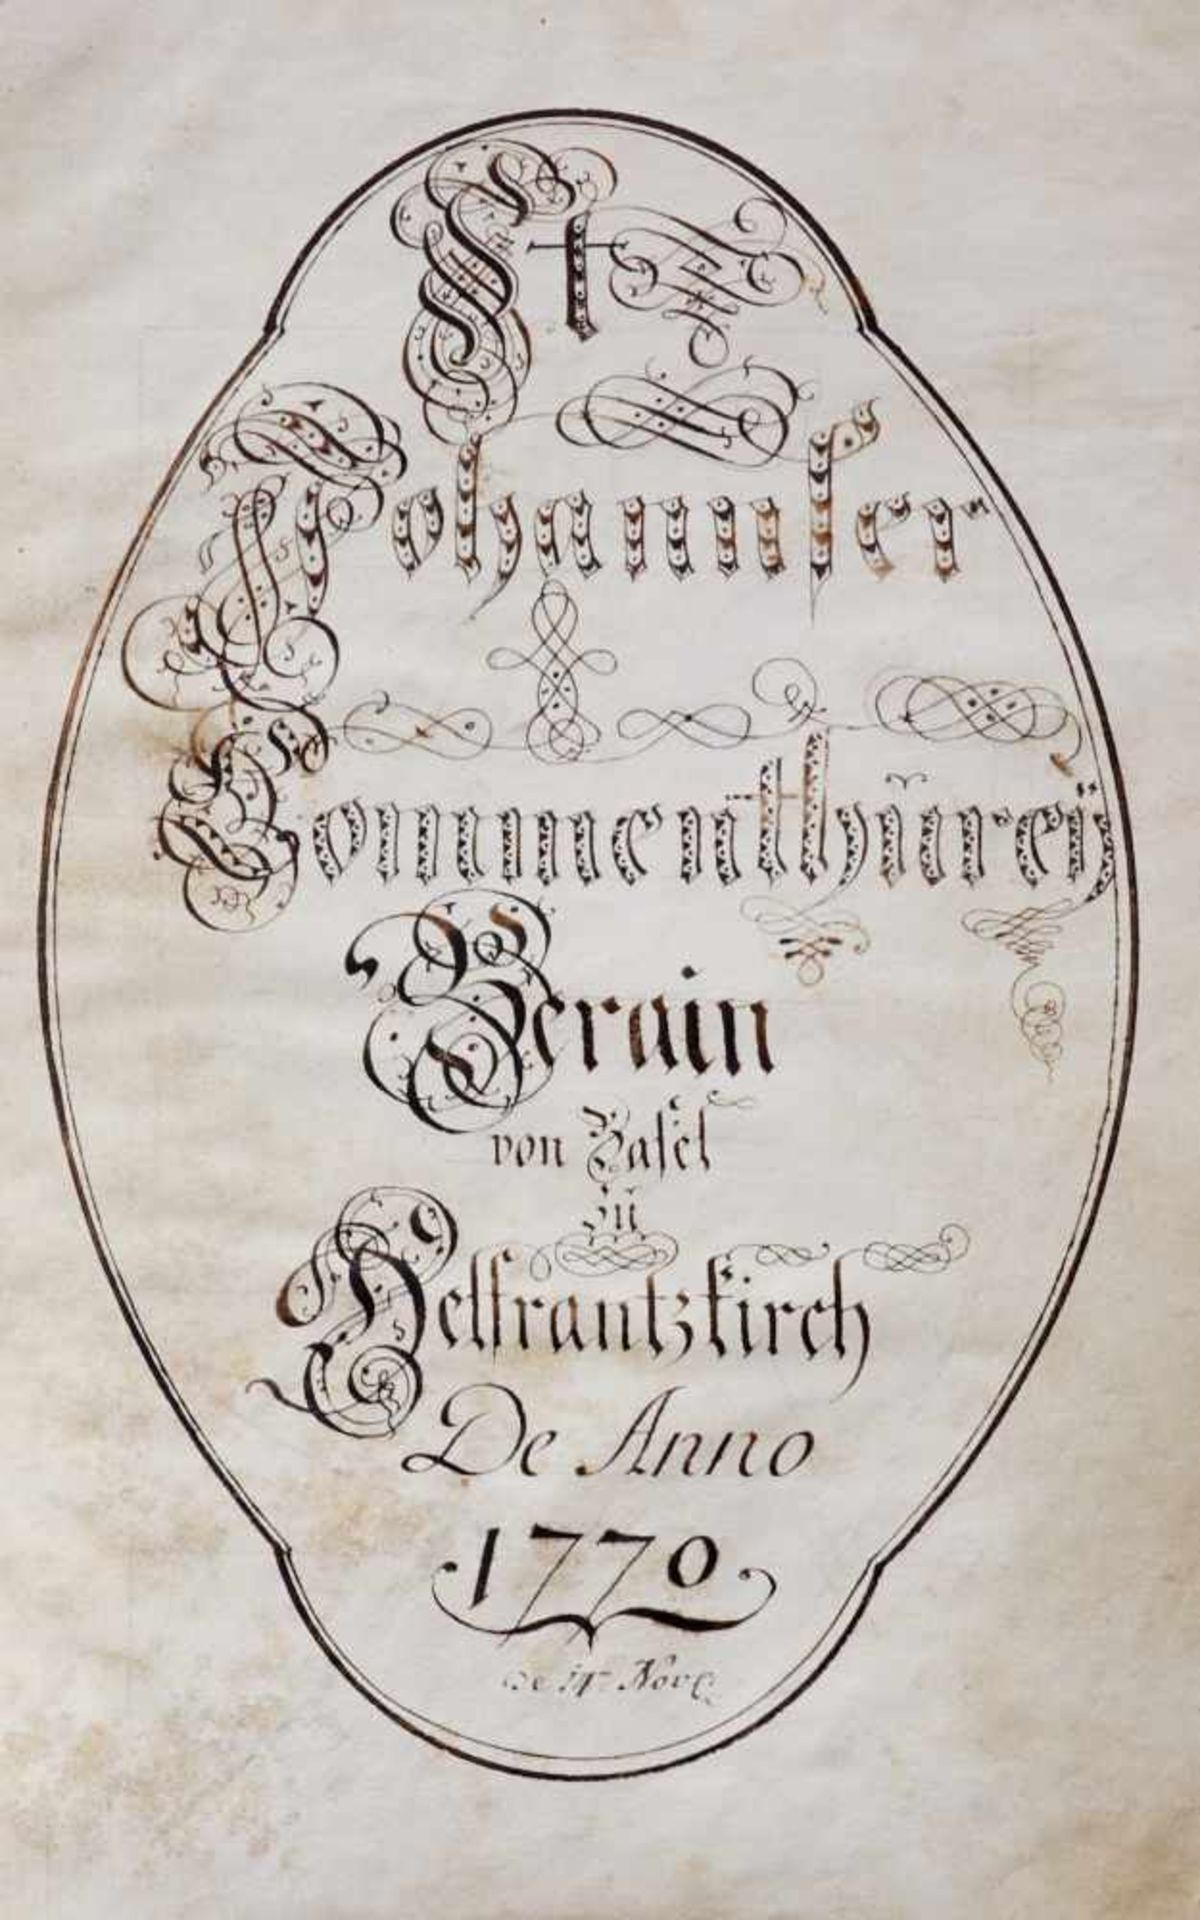 "St. Johannser Commenthurey Terain von Basel zu HelfrantzkirchDe Anno 1770". Deutsche Handschrift - Bild 2 aus 4